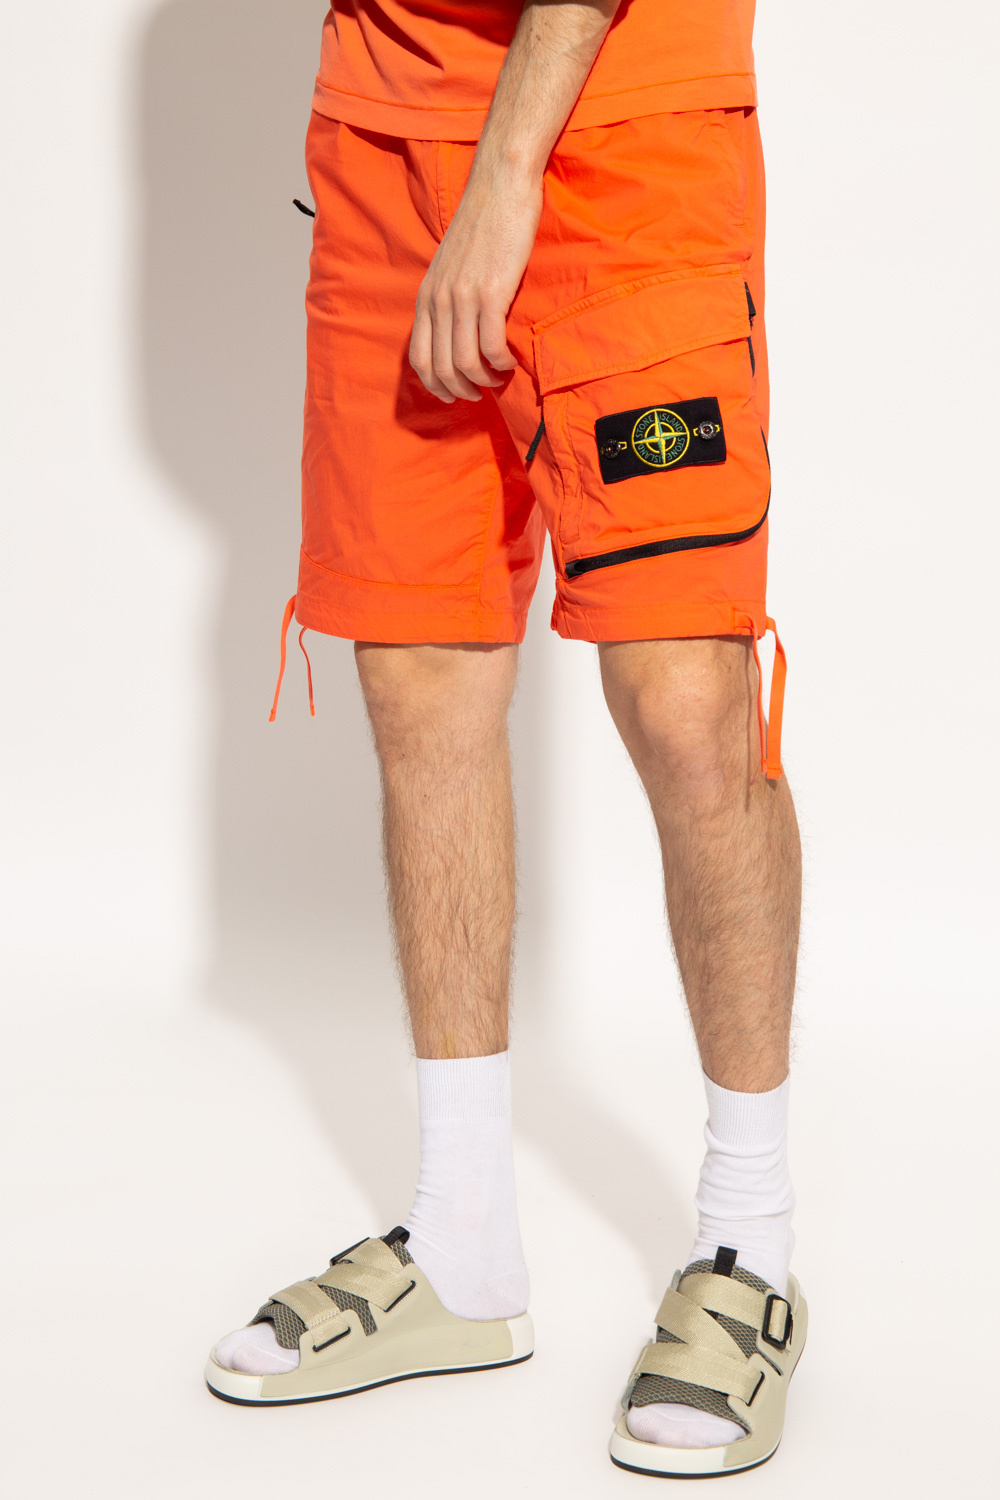 Stone Island Shorts with logo | Men's Clothing | Vitkac